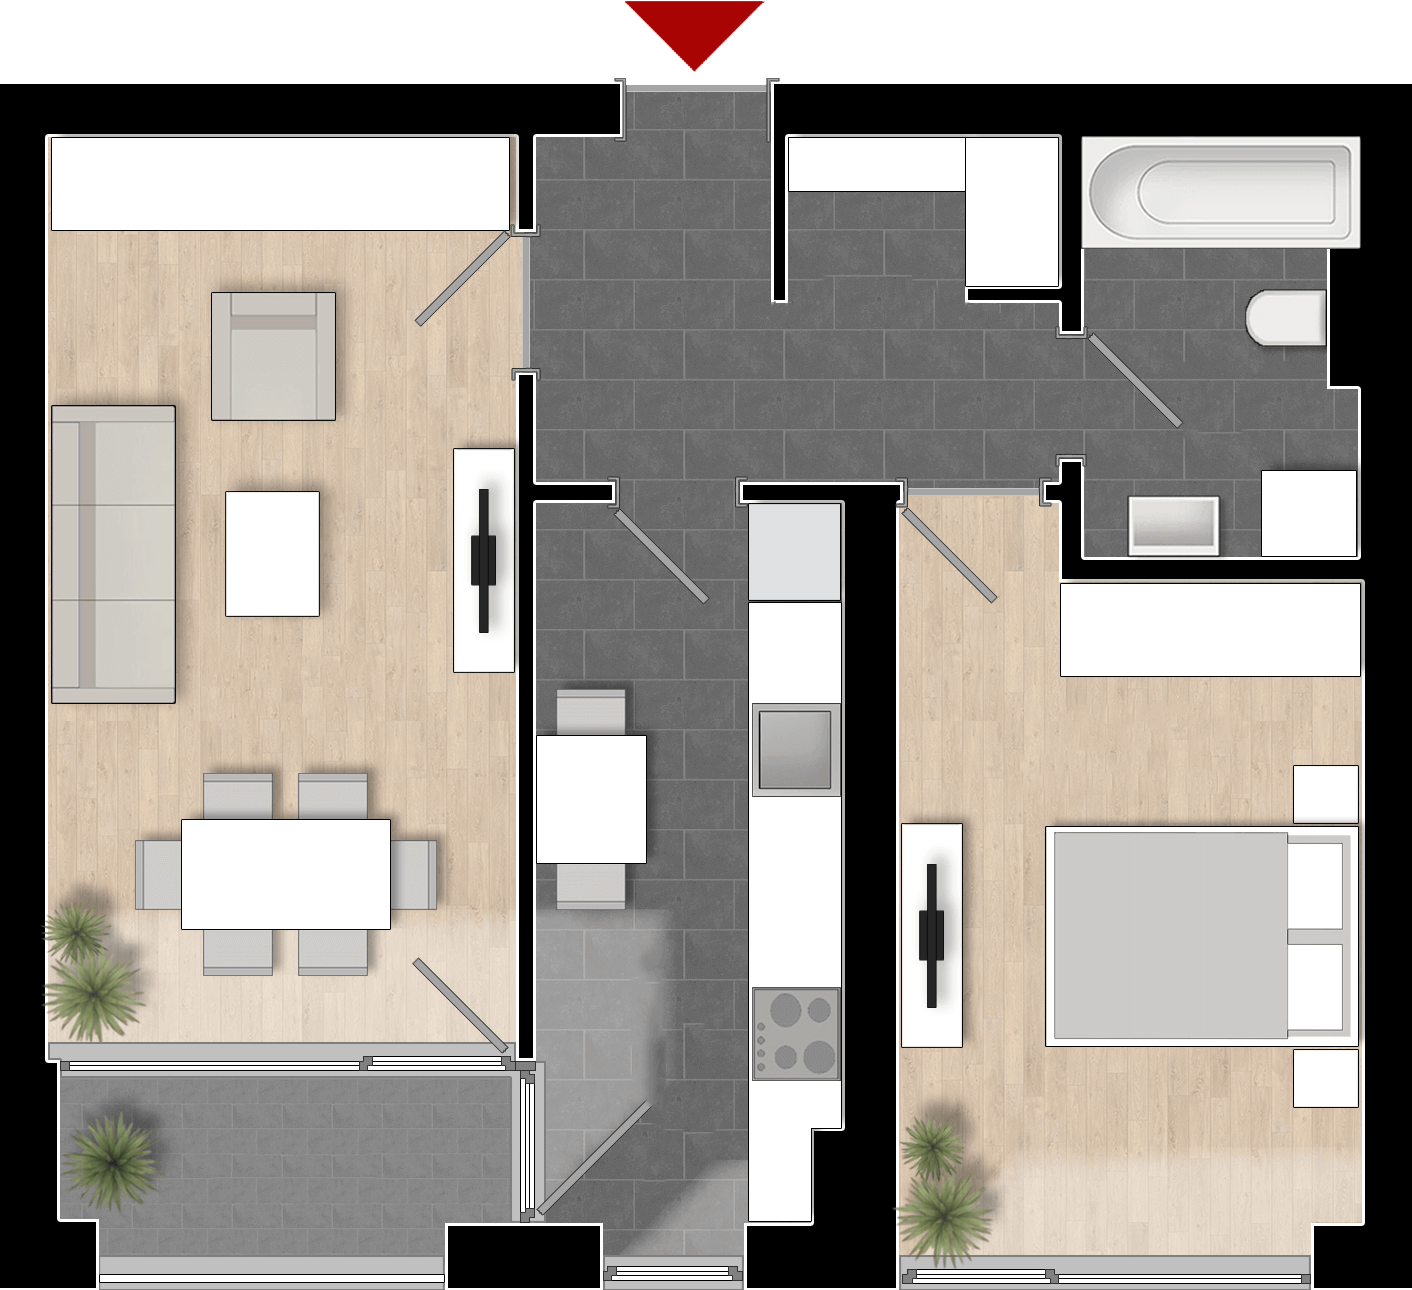  Apartament 202, Tip de apartament 2A cu 2 camere 